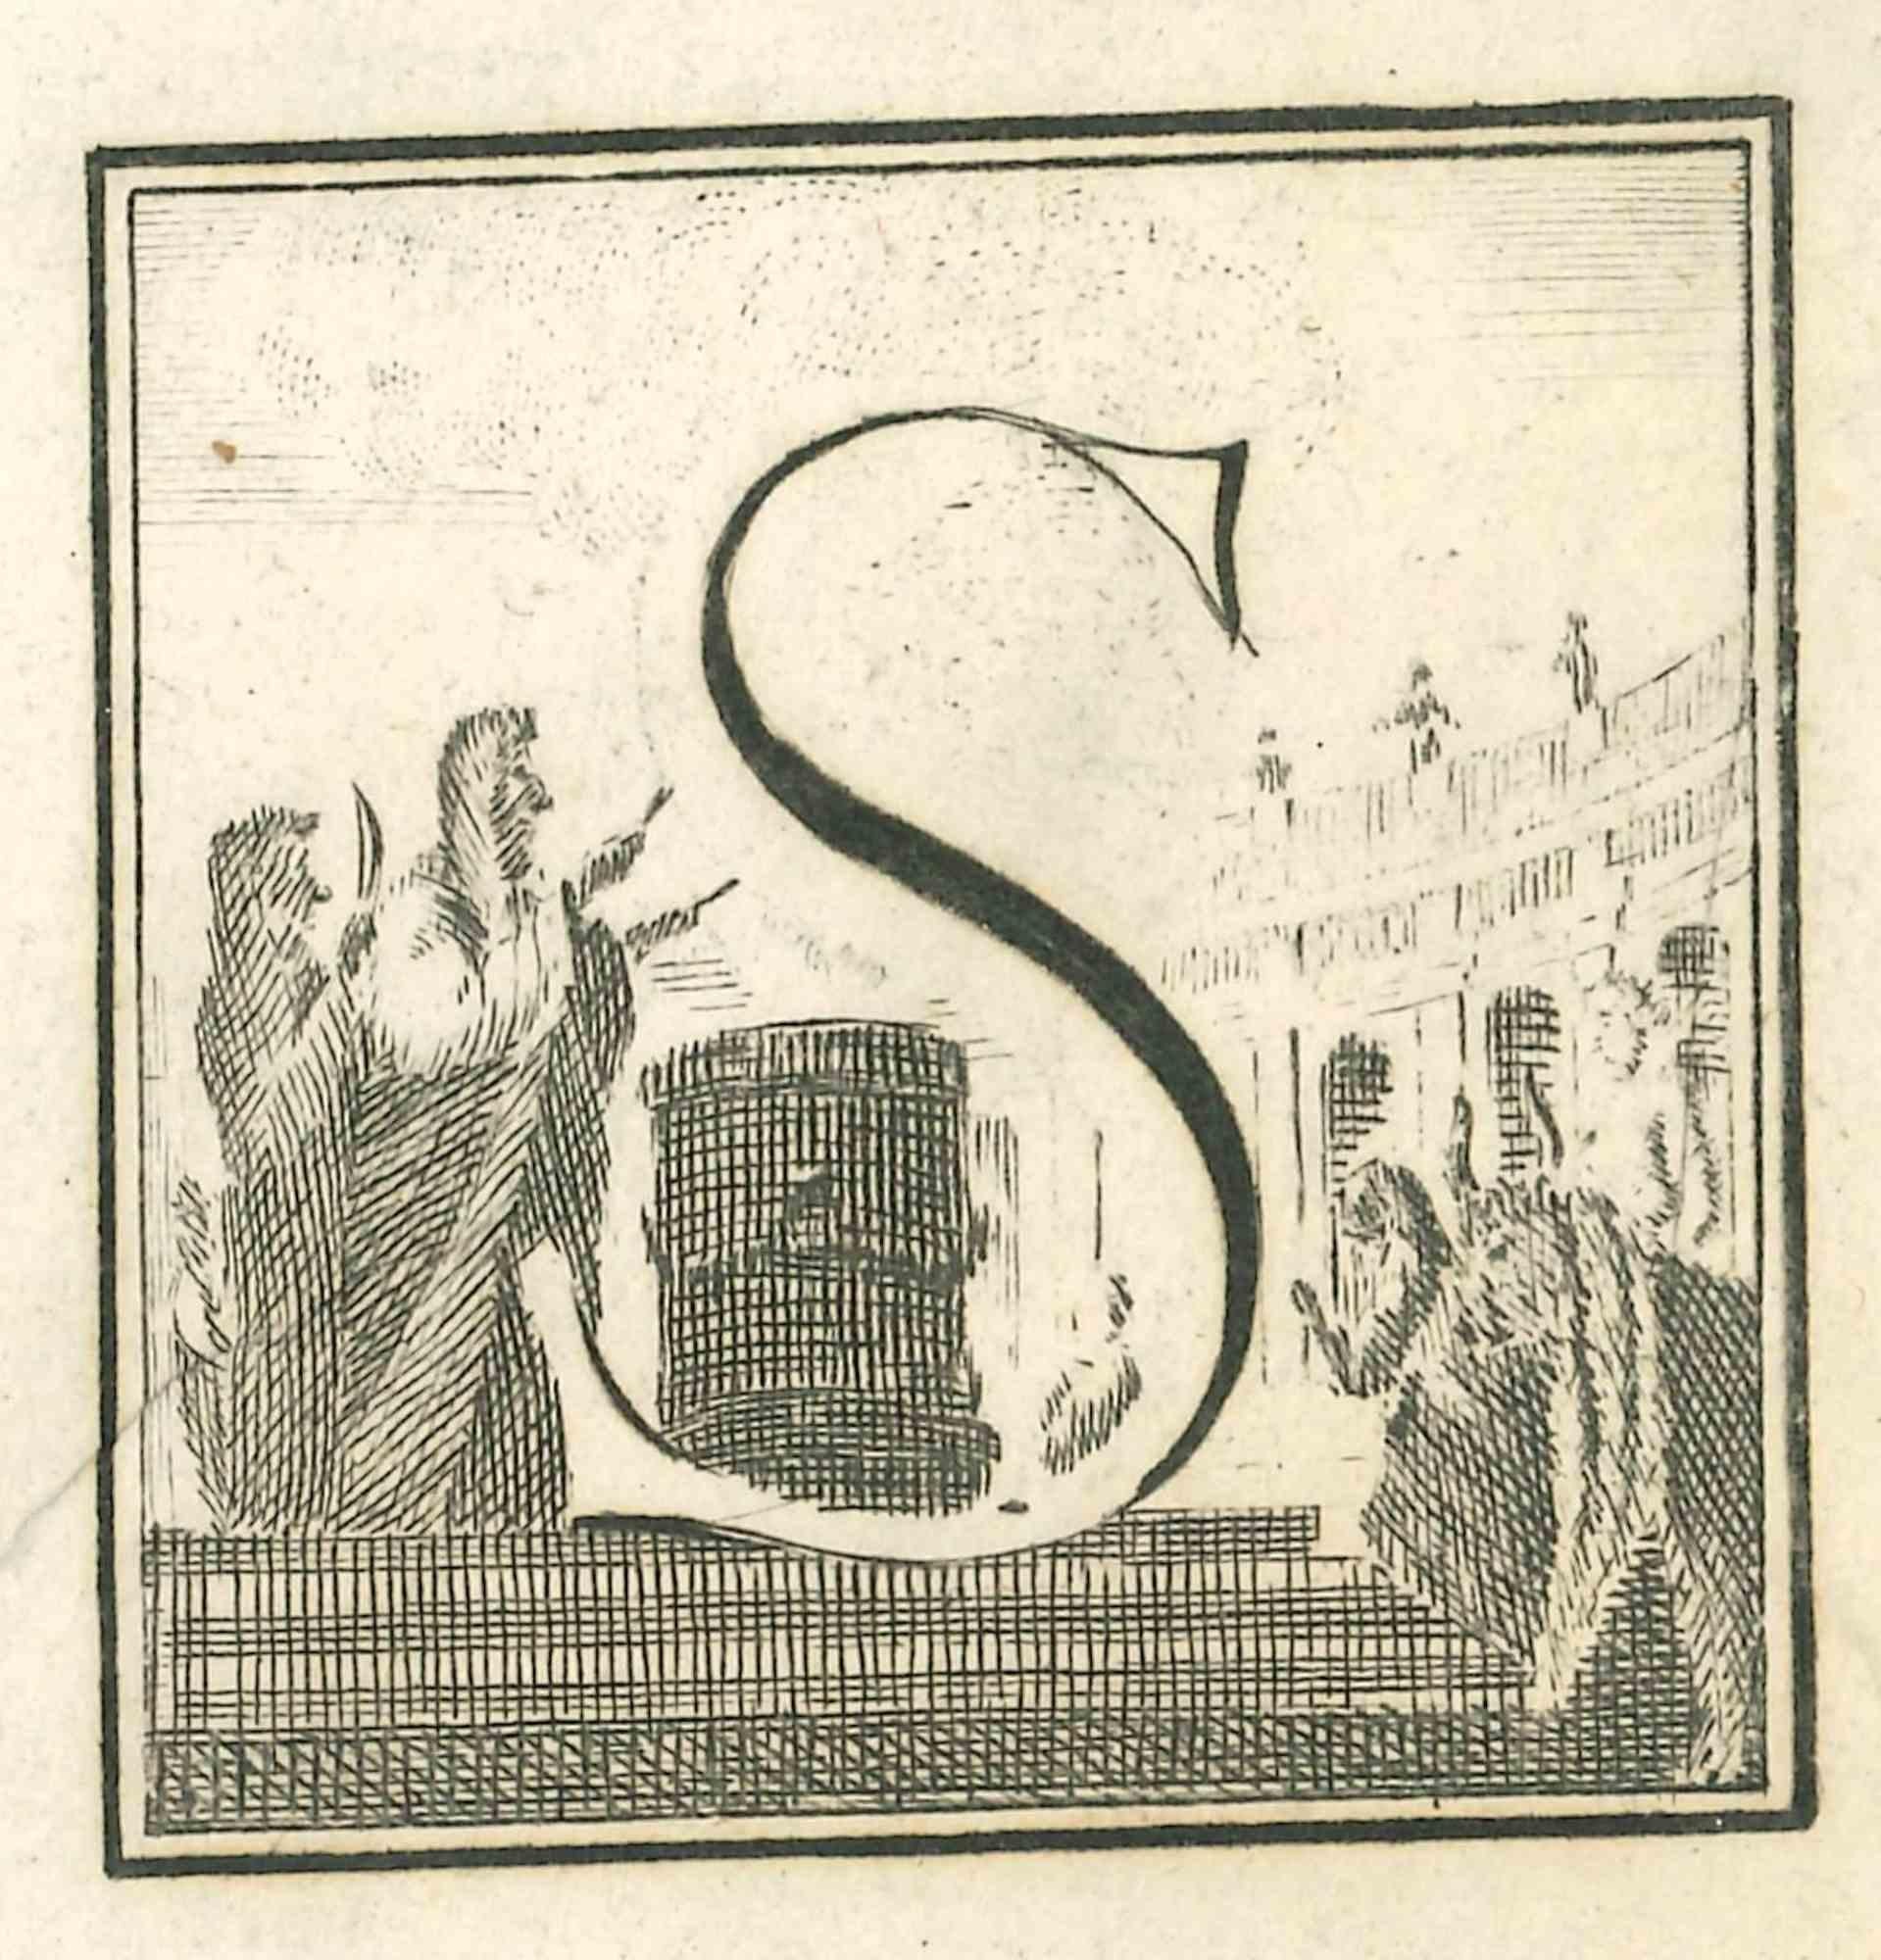 La lettre S est une gravure réalisée par Luigi Vanvitelli au XVIIIe siècle.

La gravure appartient à la suite d'estampes "Antiquités d'Herculanum exposées" (titre original : "Le Antichità di Ercolano Esposte"), un volume de huit gravures des